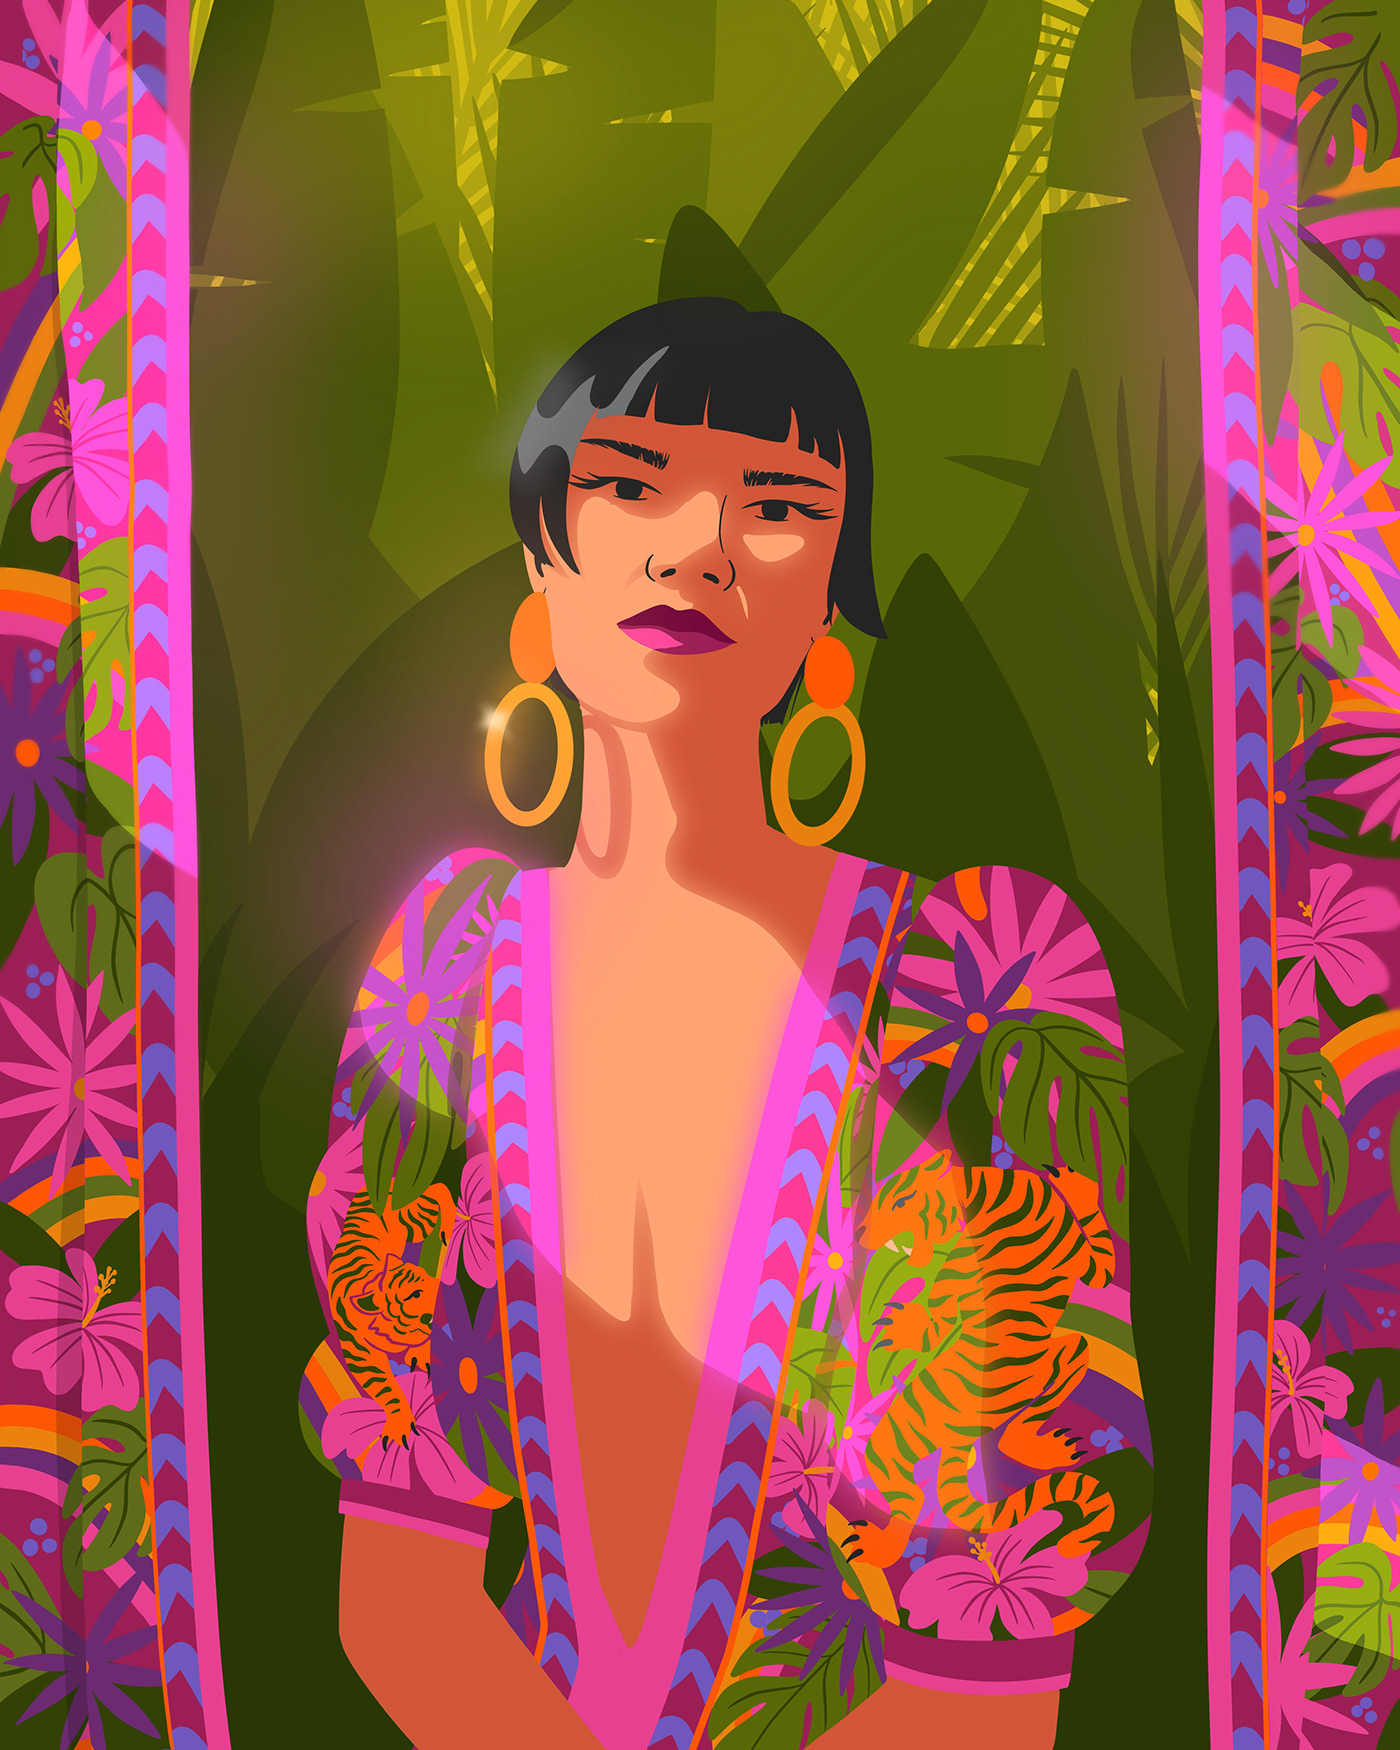 portrait digital portrait female portrait illustration Tropical Pop Art flat illustration editorial Editorial Illustration magazine